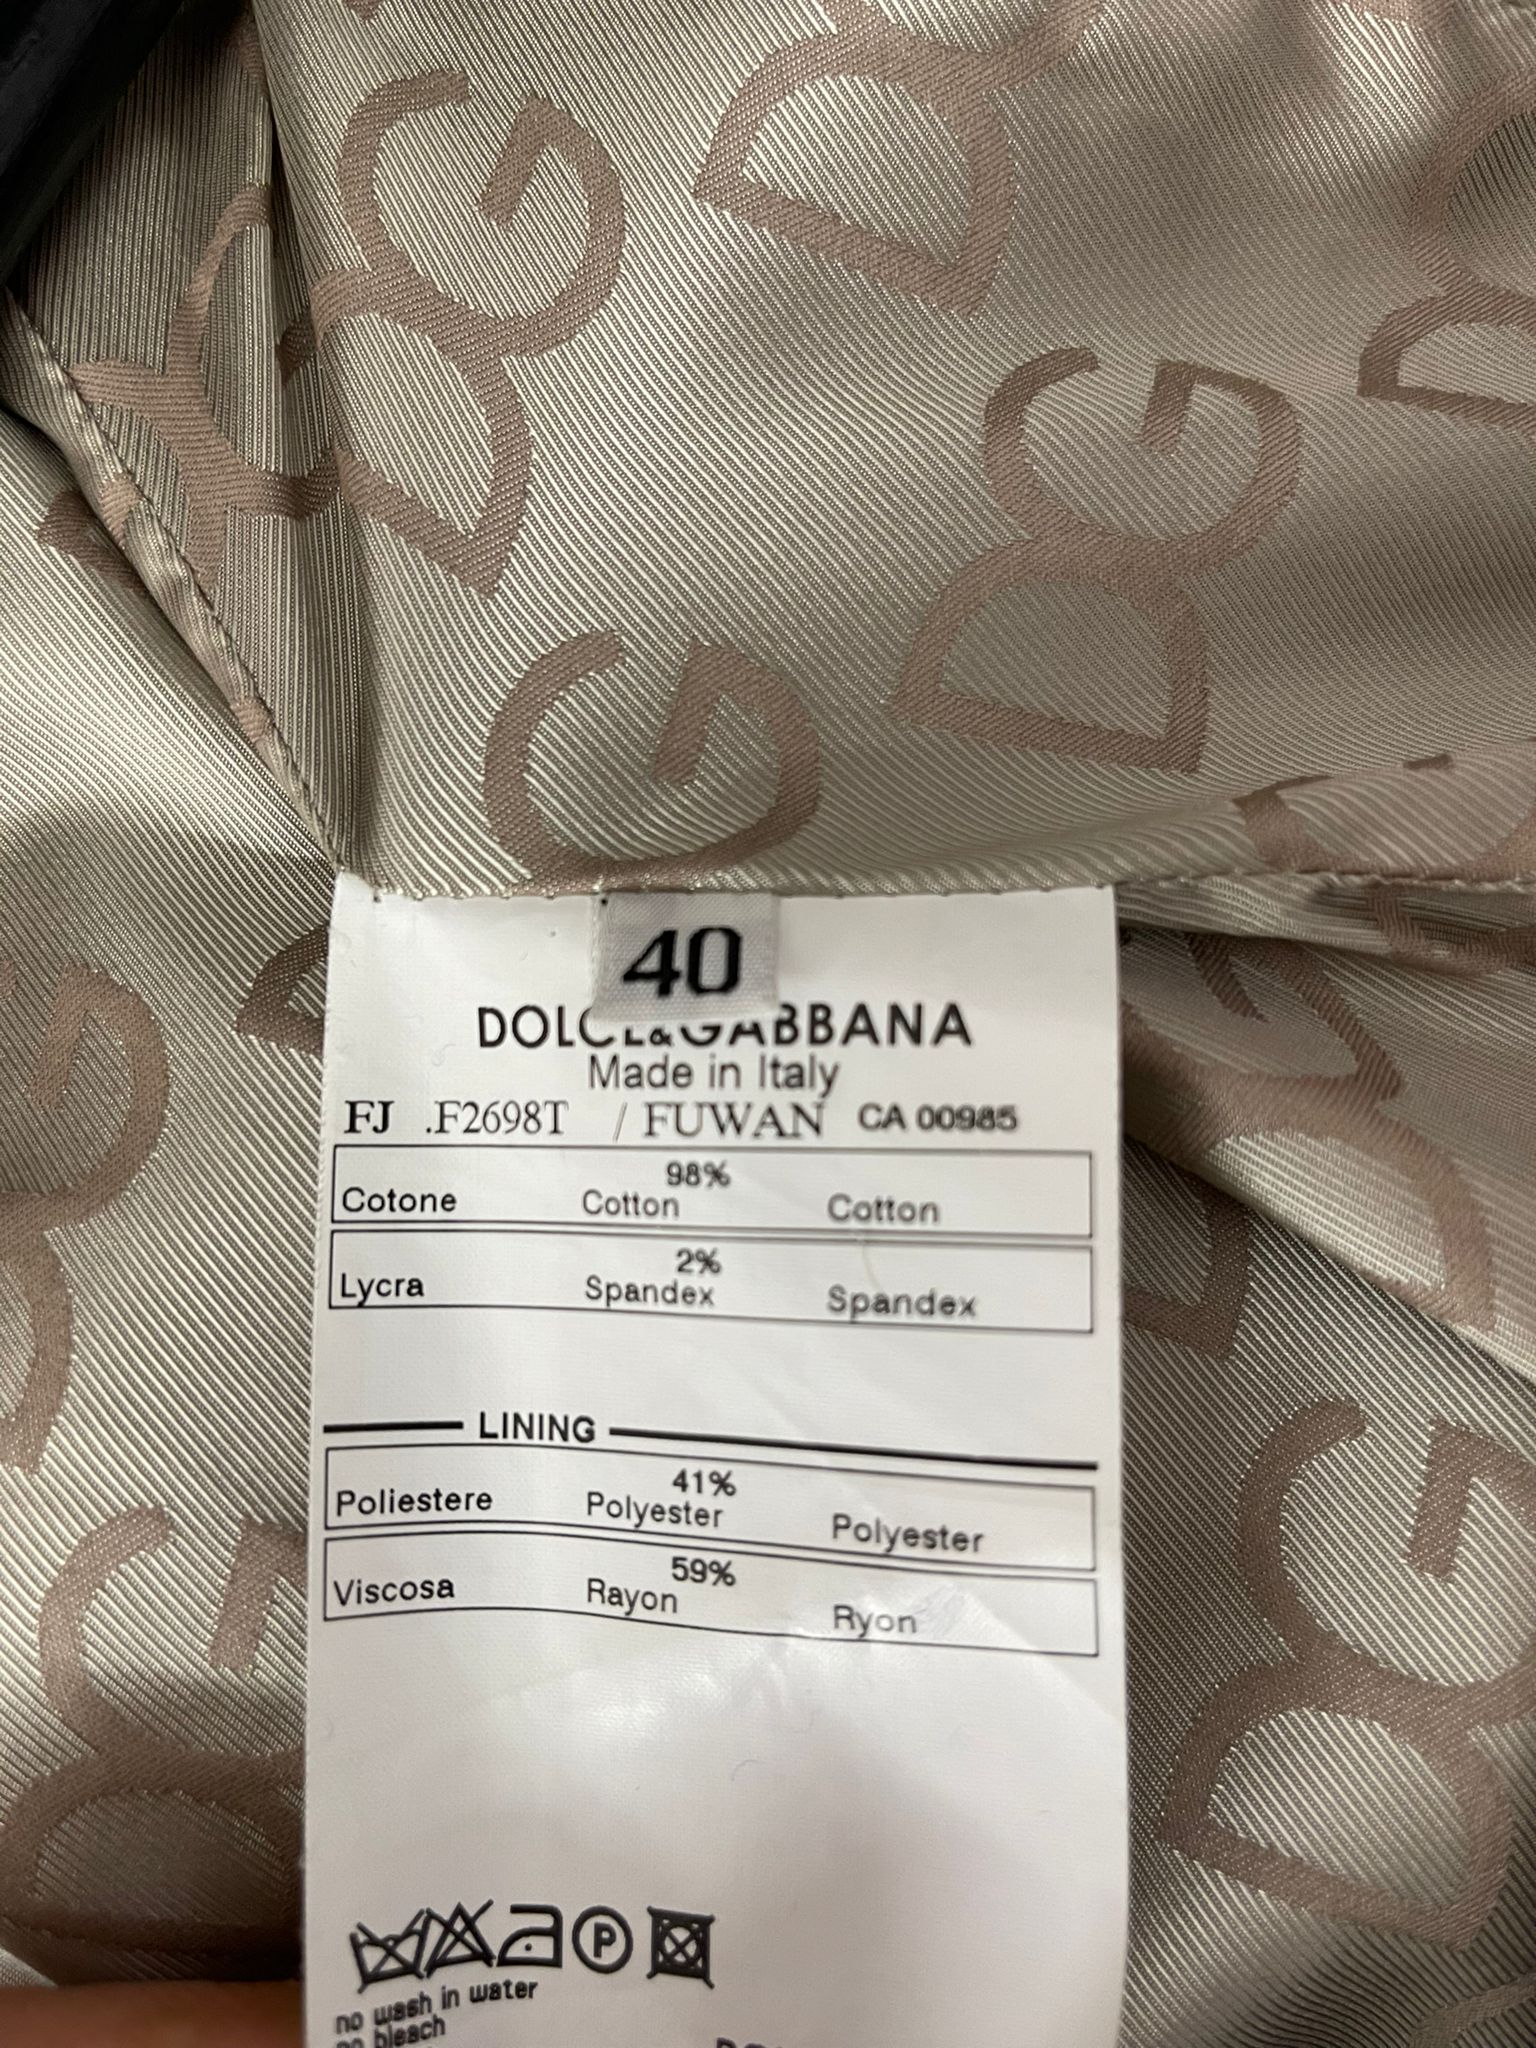 Dolce&Gabbana Sako